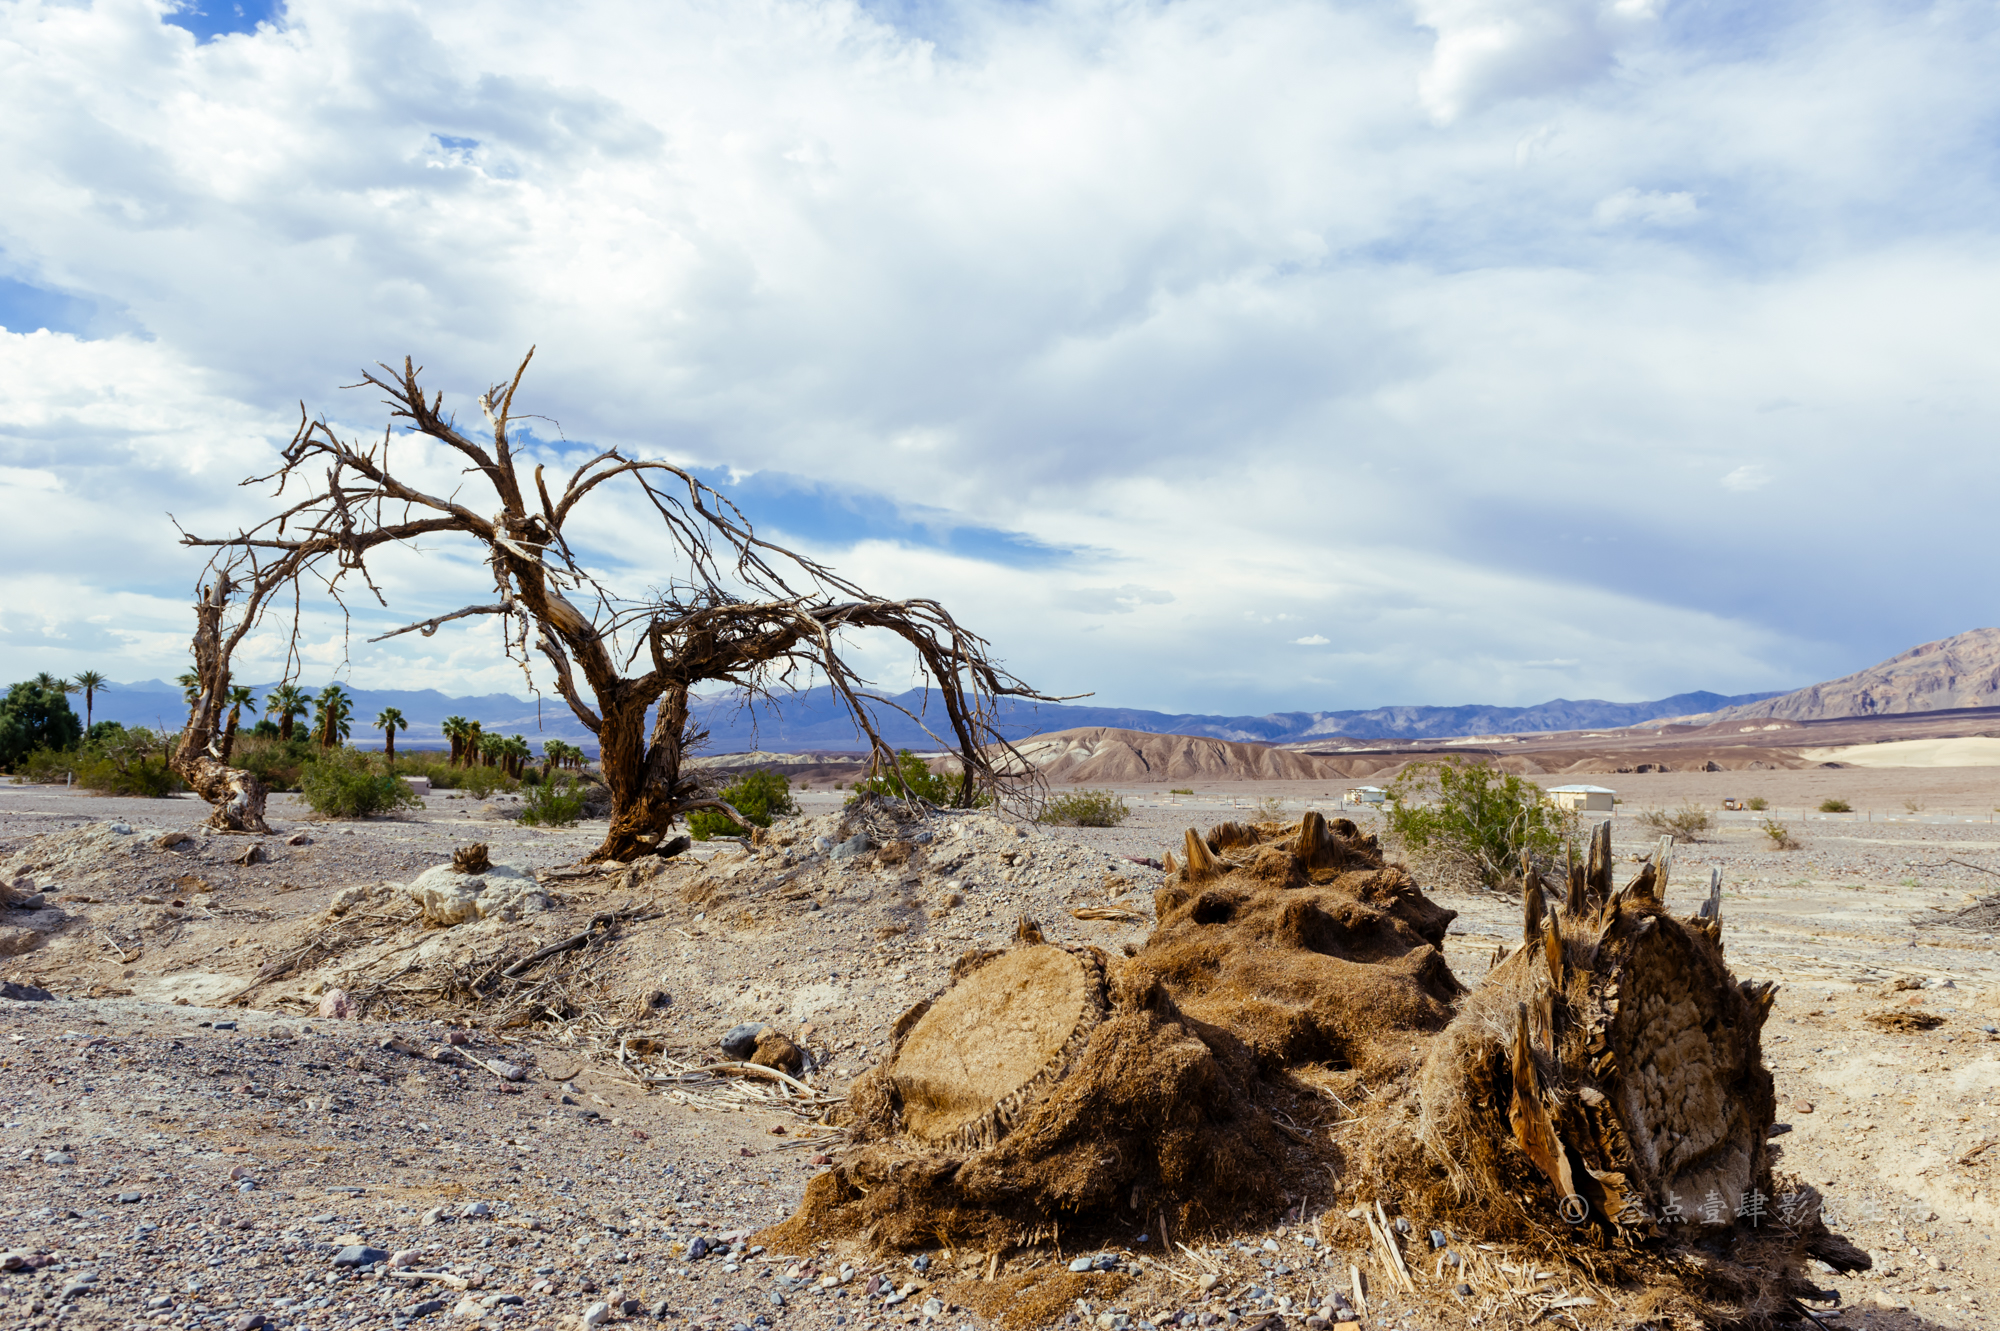 当天温度4833摄氏度,美国死亡谷国家公园游记